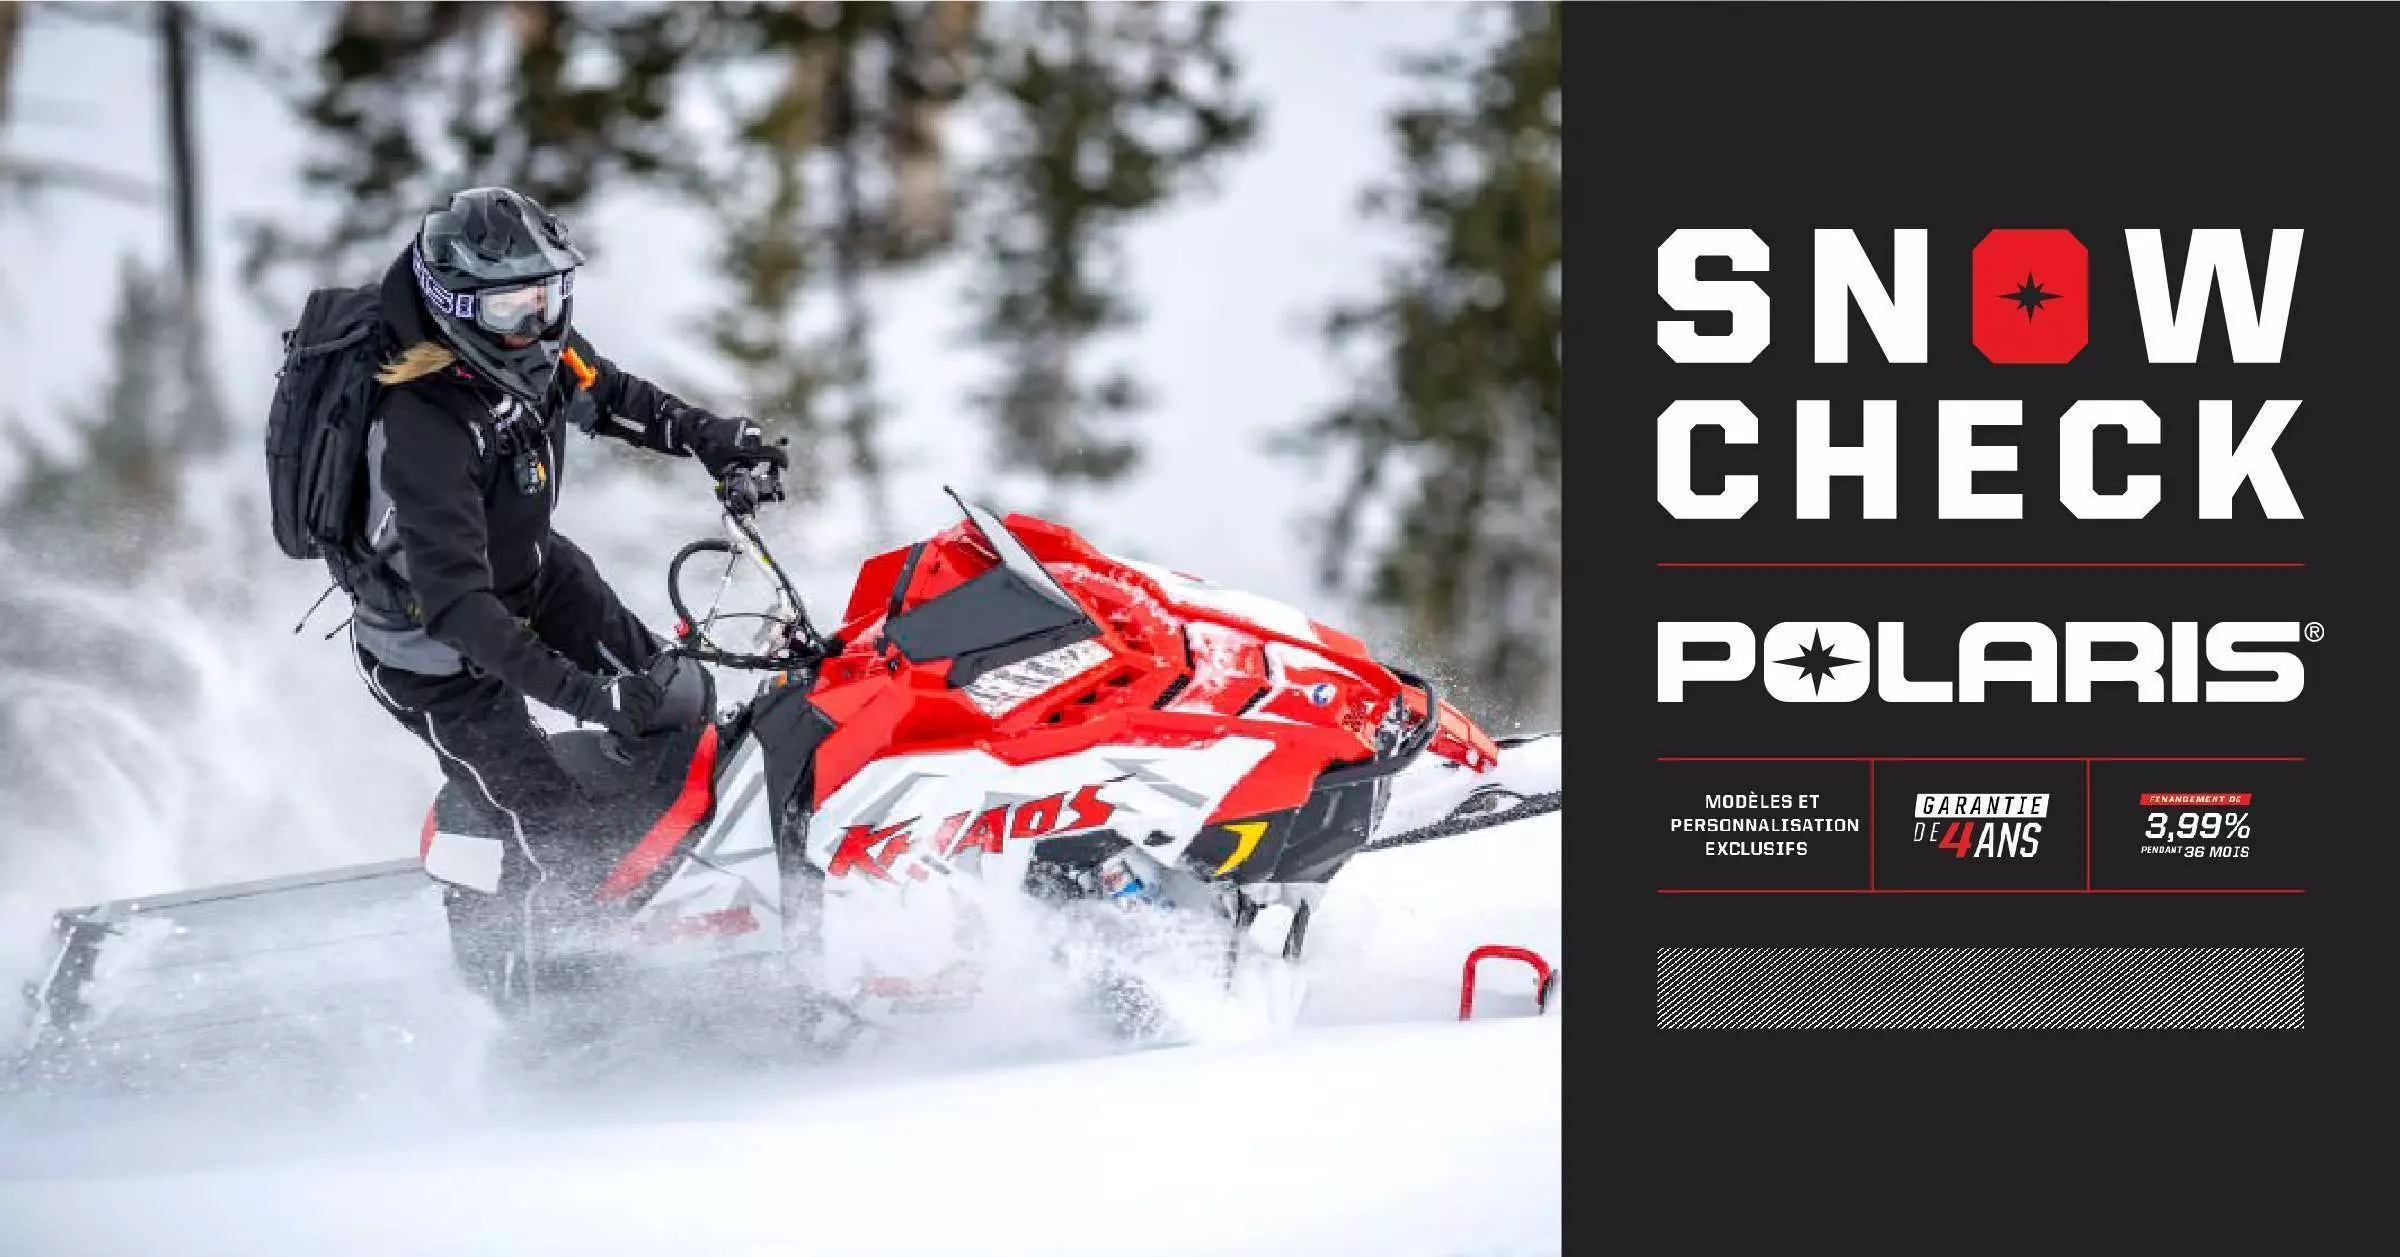 Choisissez votre motoneige Polaris SnowCheck 2020 !